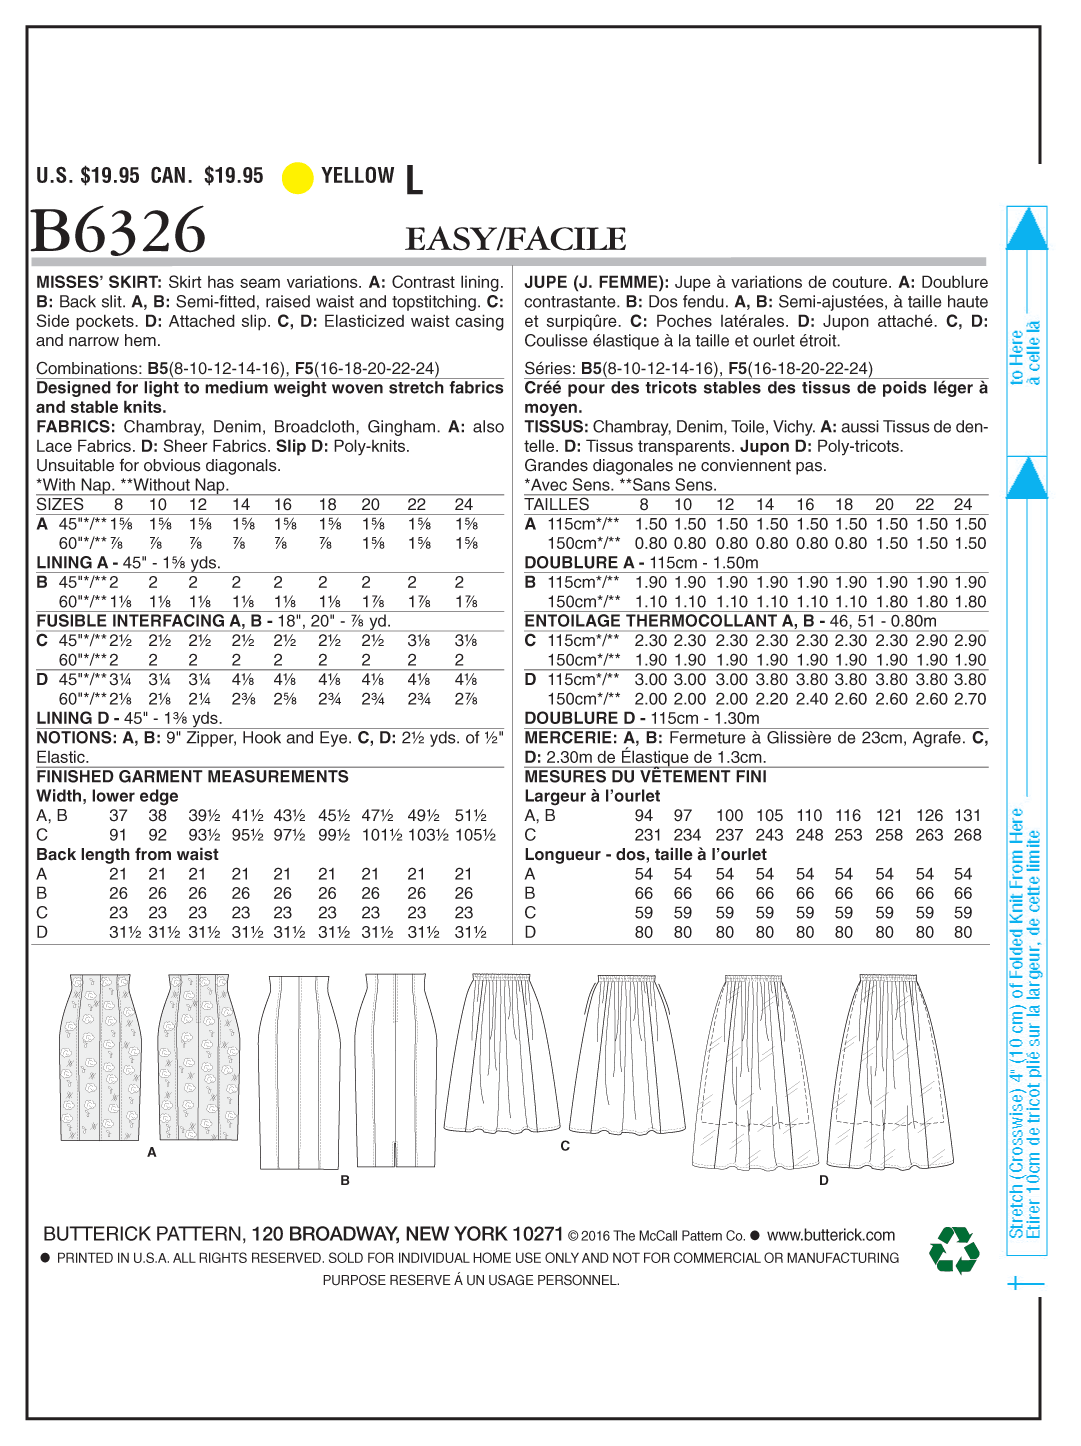 Butterick B6326 Misses' Raised-Waist or Elastic-Waist Skirts